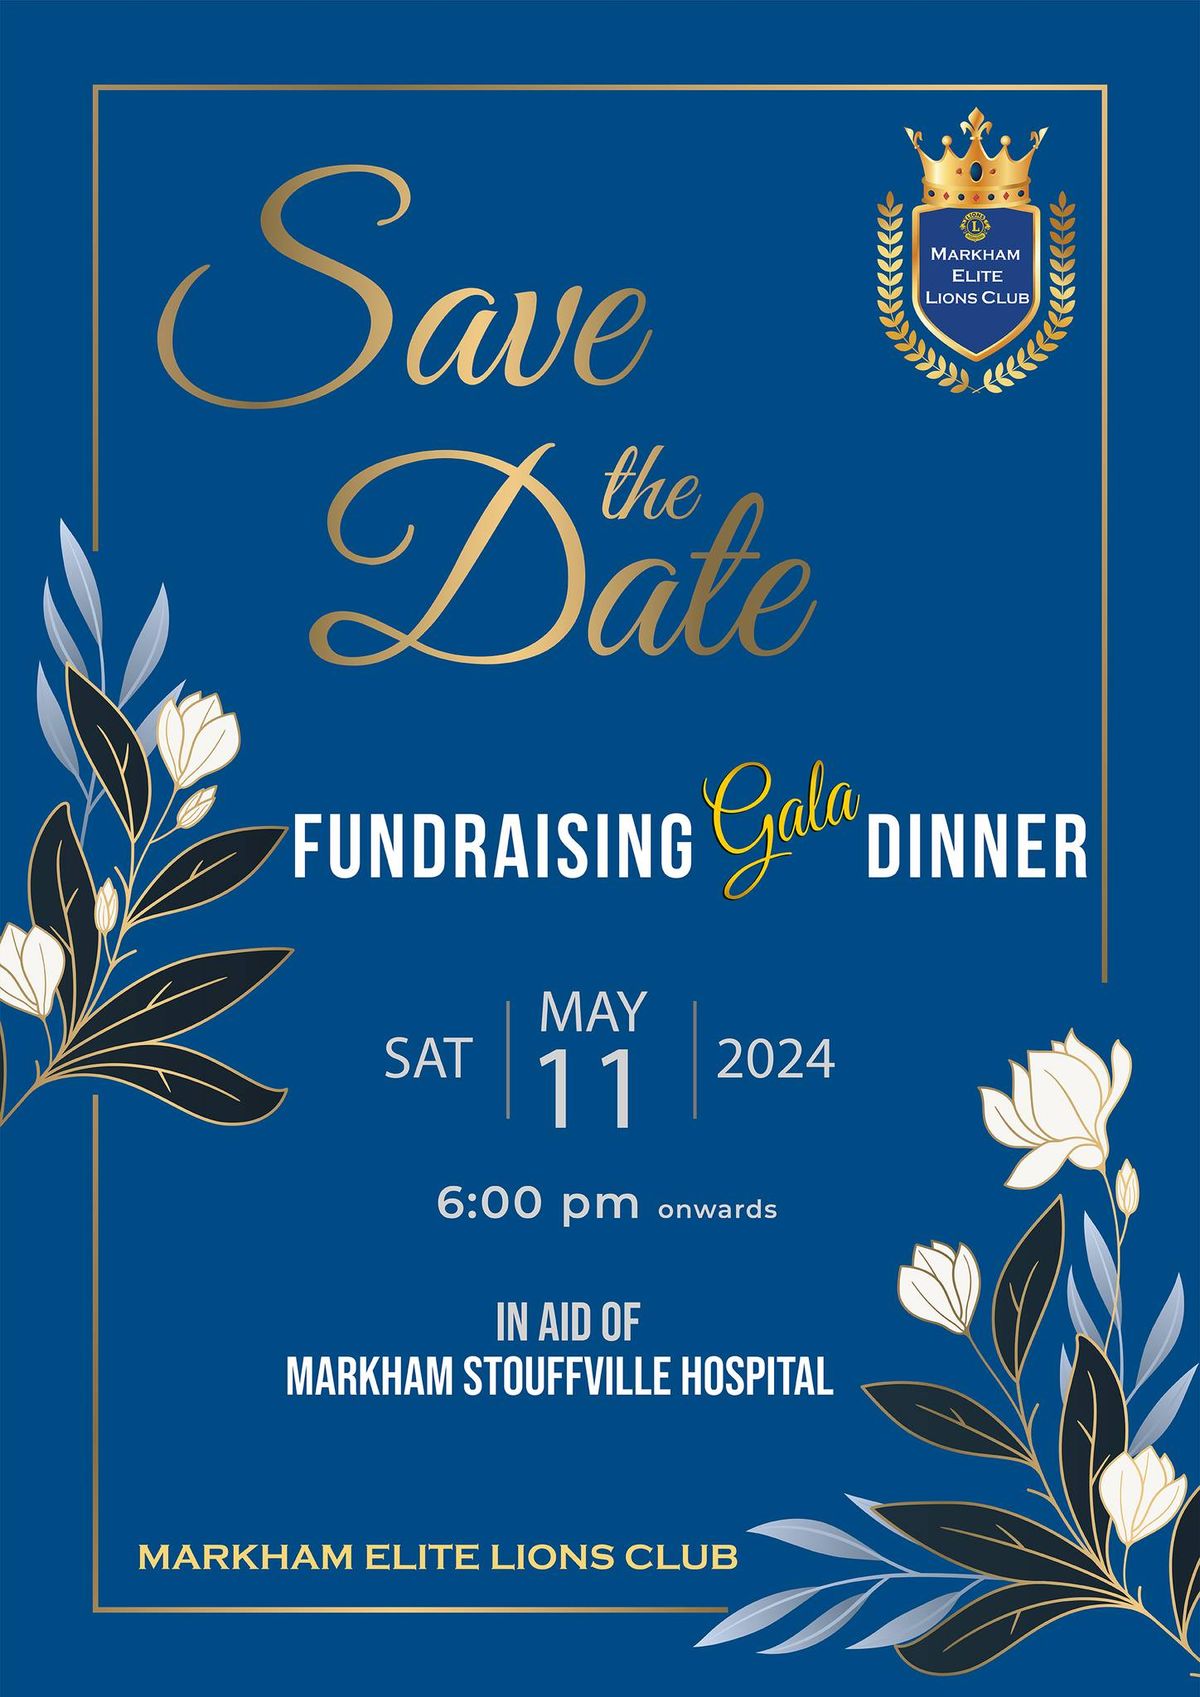 Fundraising Gala Dinner 2024